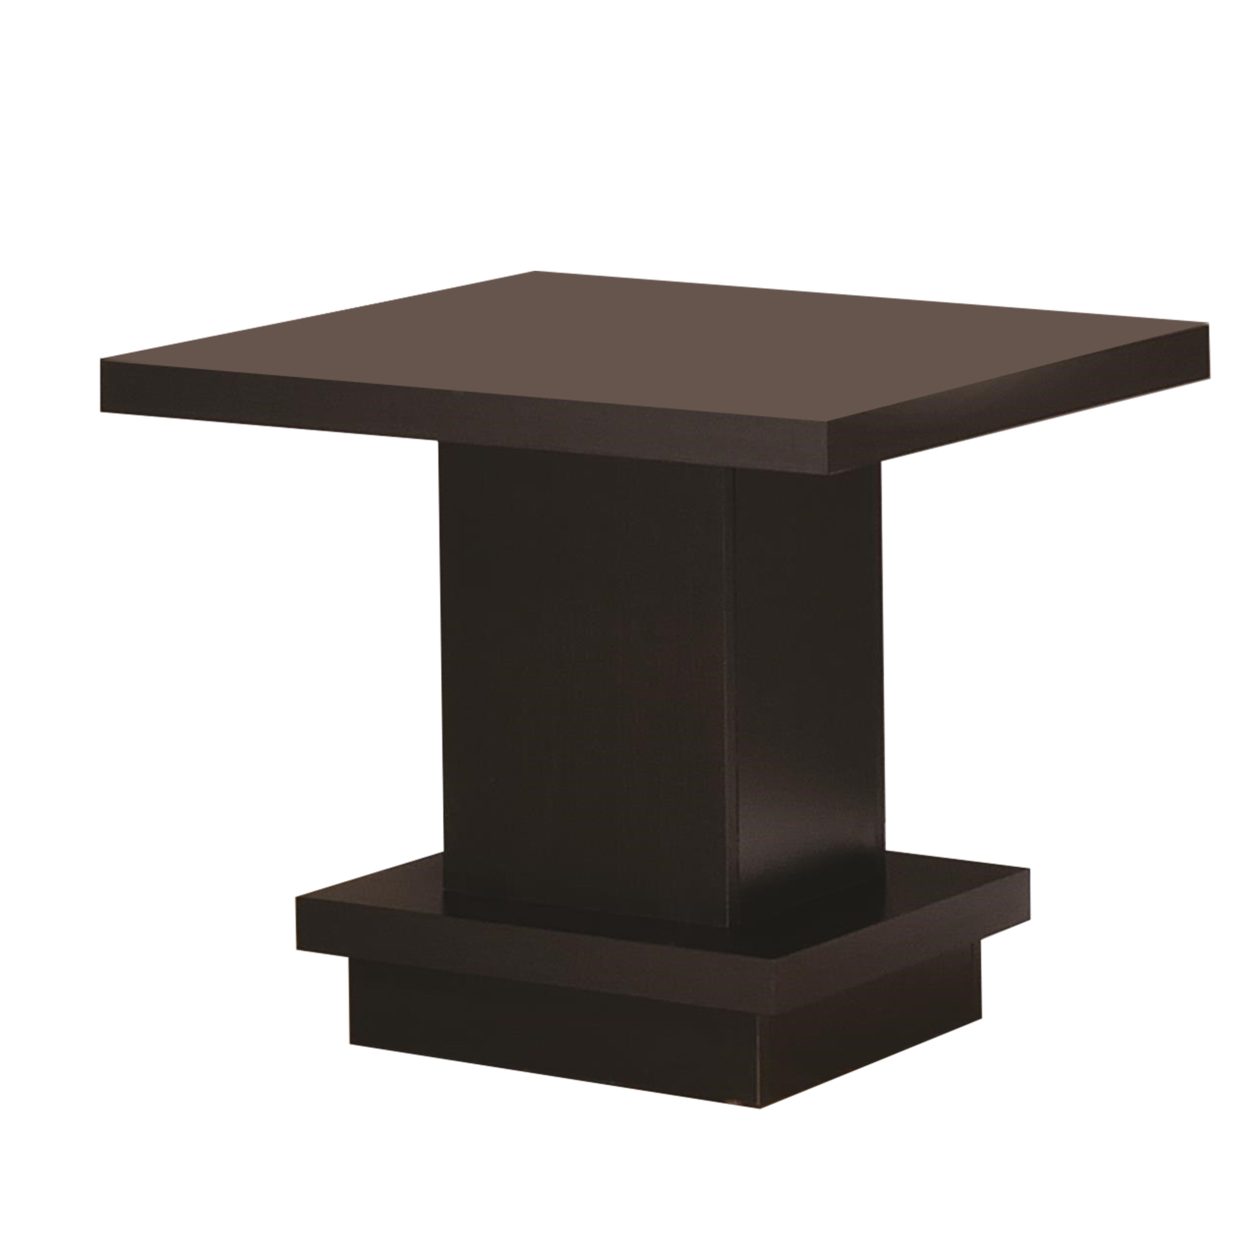 Contemporary End Table With Pedestal Base, Cappuccino Brown- Saltoro Sherpi